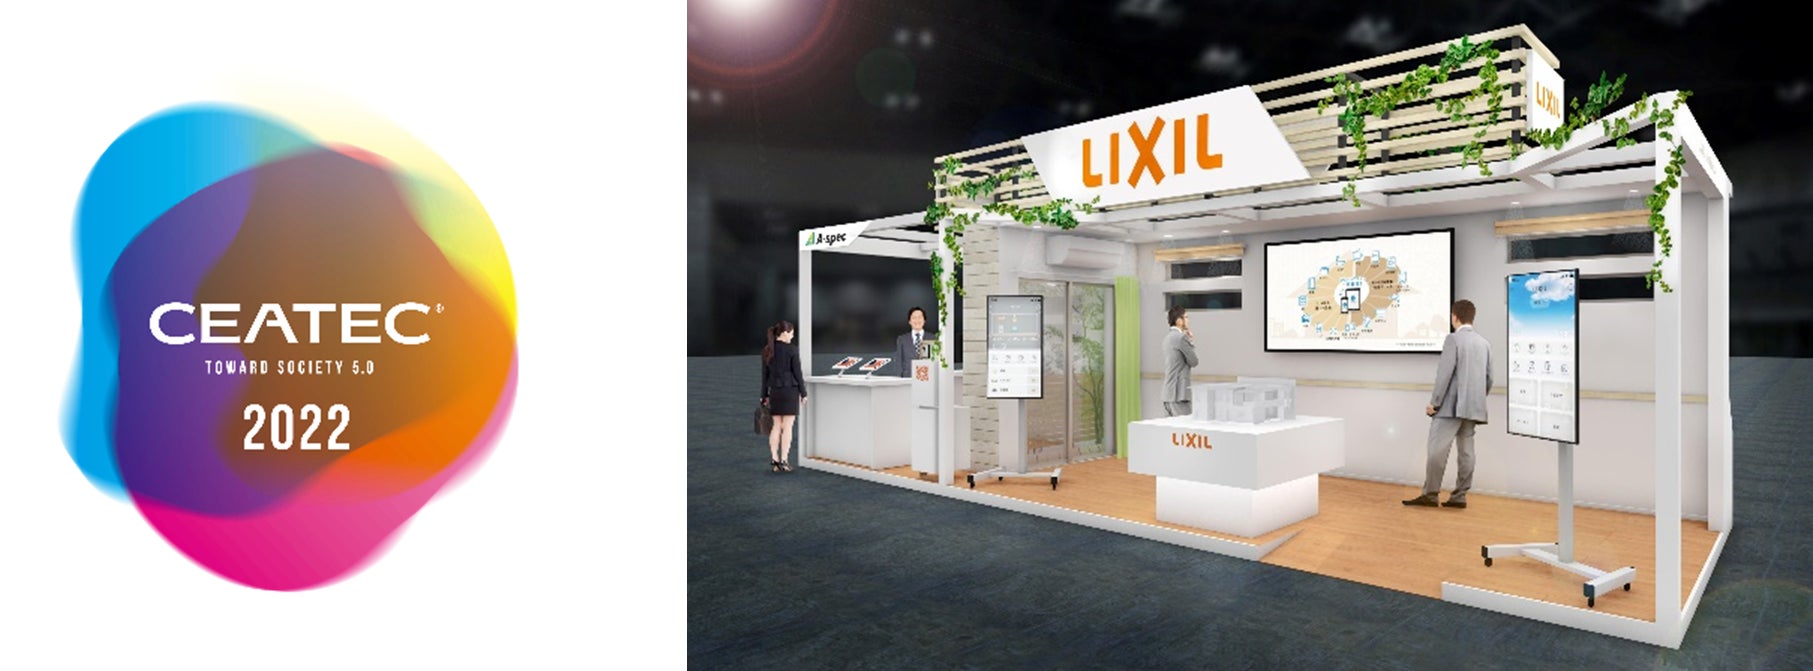 LIXIL、Society5.0の総合展示会「CEATEC 2022」に出展のサブ画像1